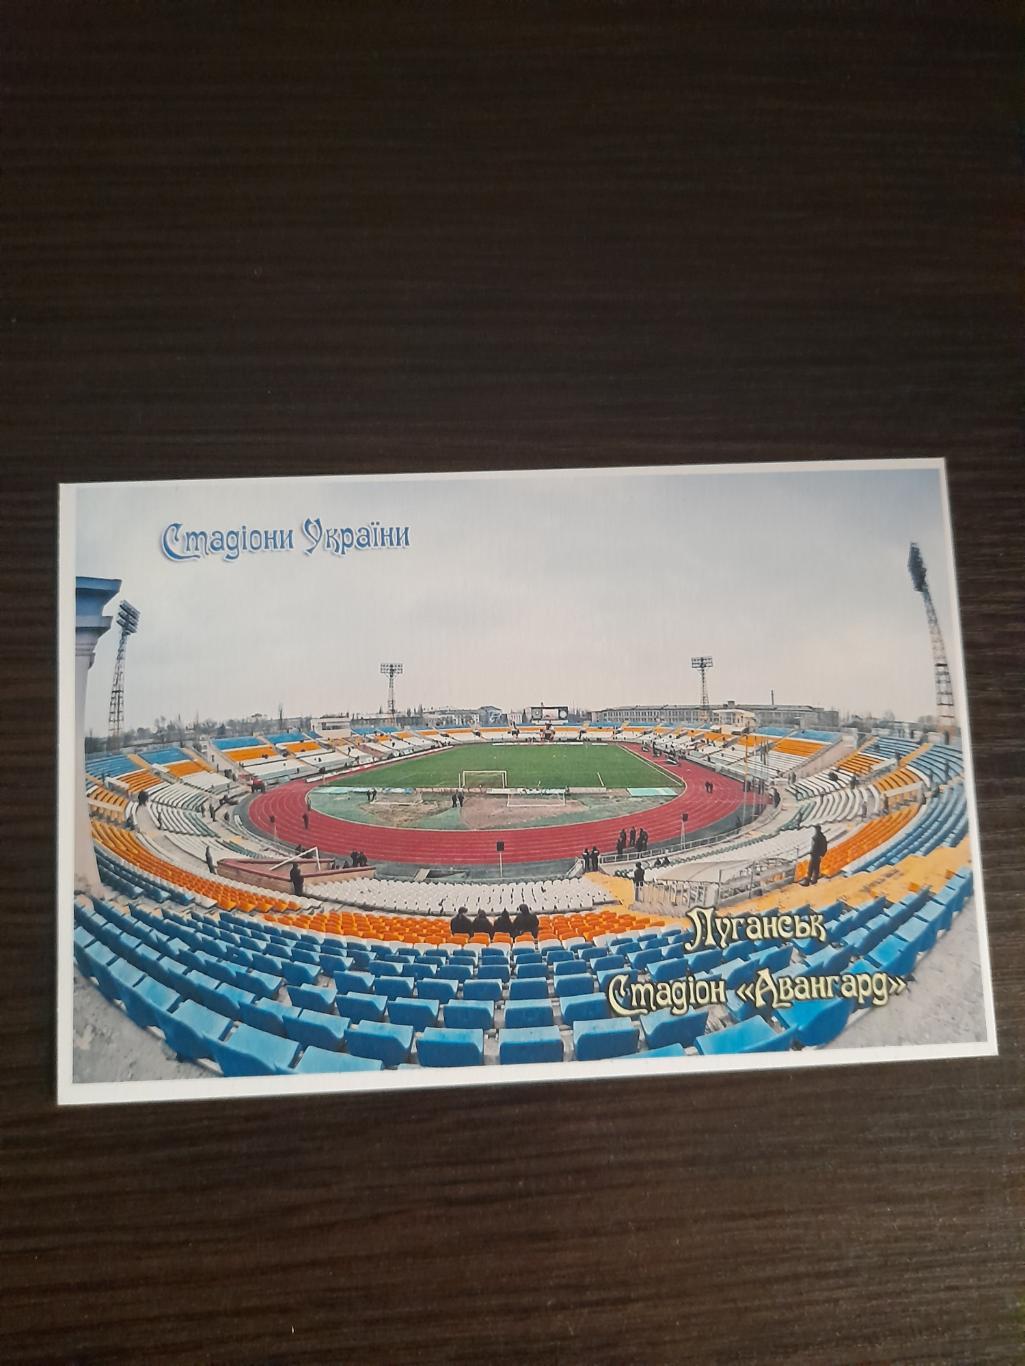 Стадион ,,Авангард Луганск, Украина/Stadium Avangard, Lugansk, Ukraine